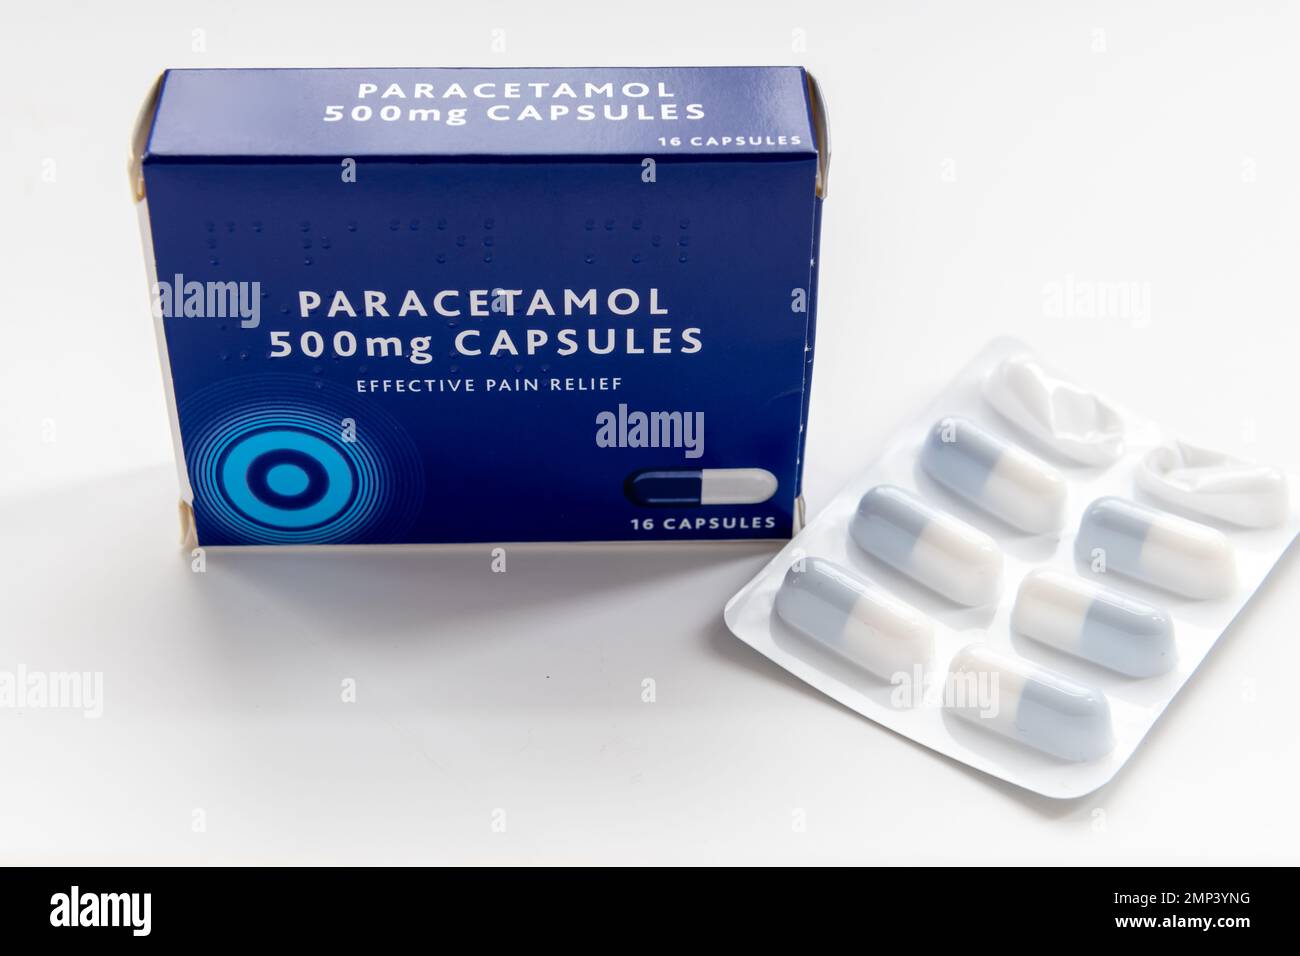 Morrisons Paracetamol 500mg Capsules